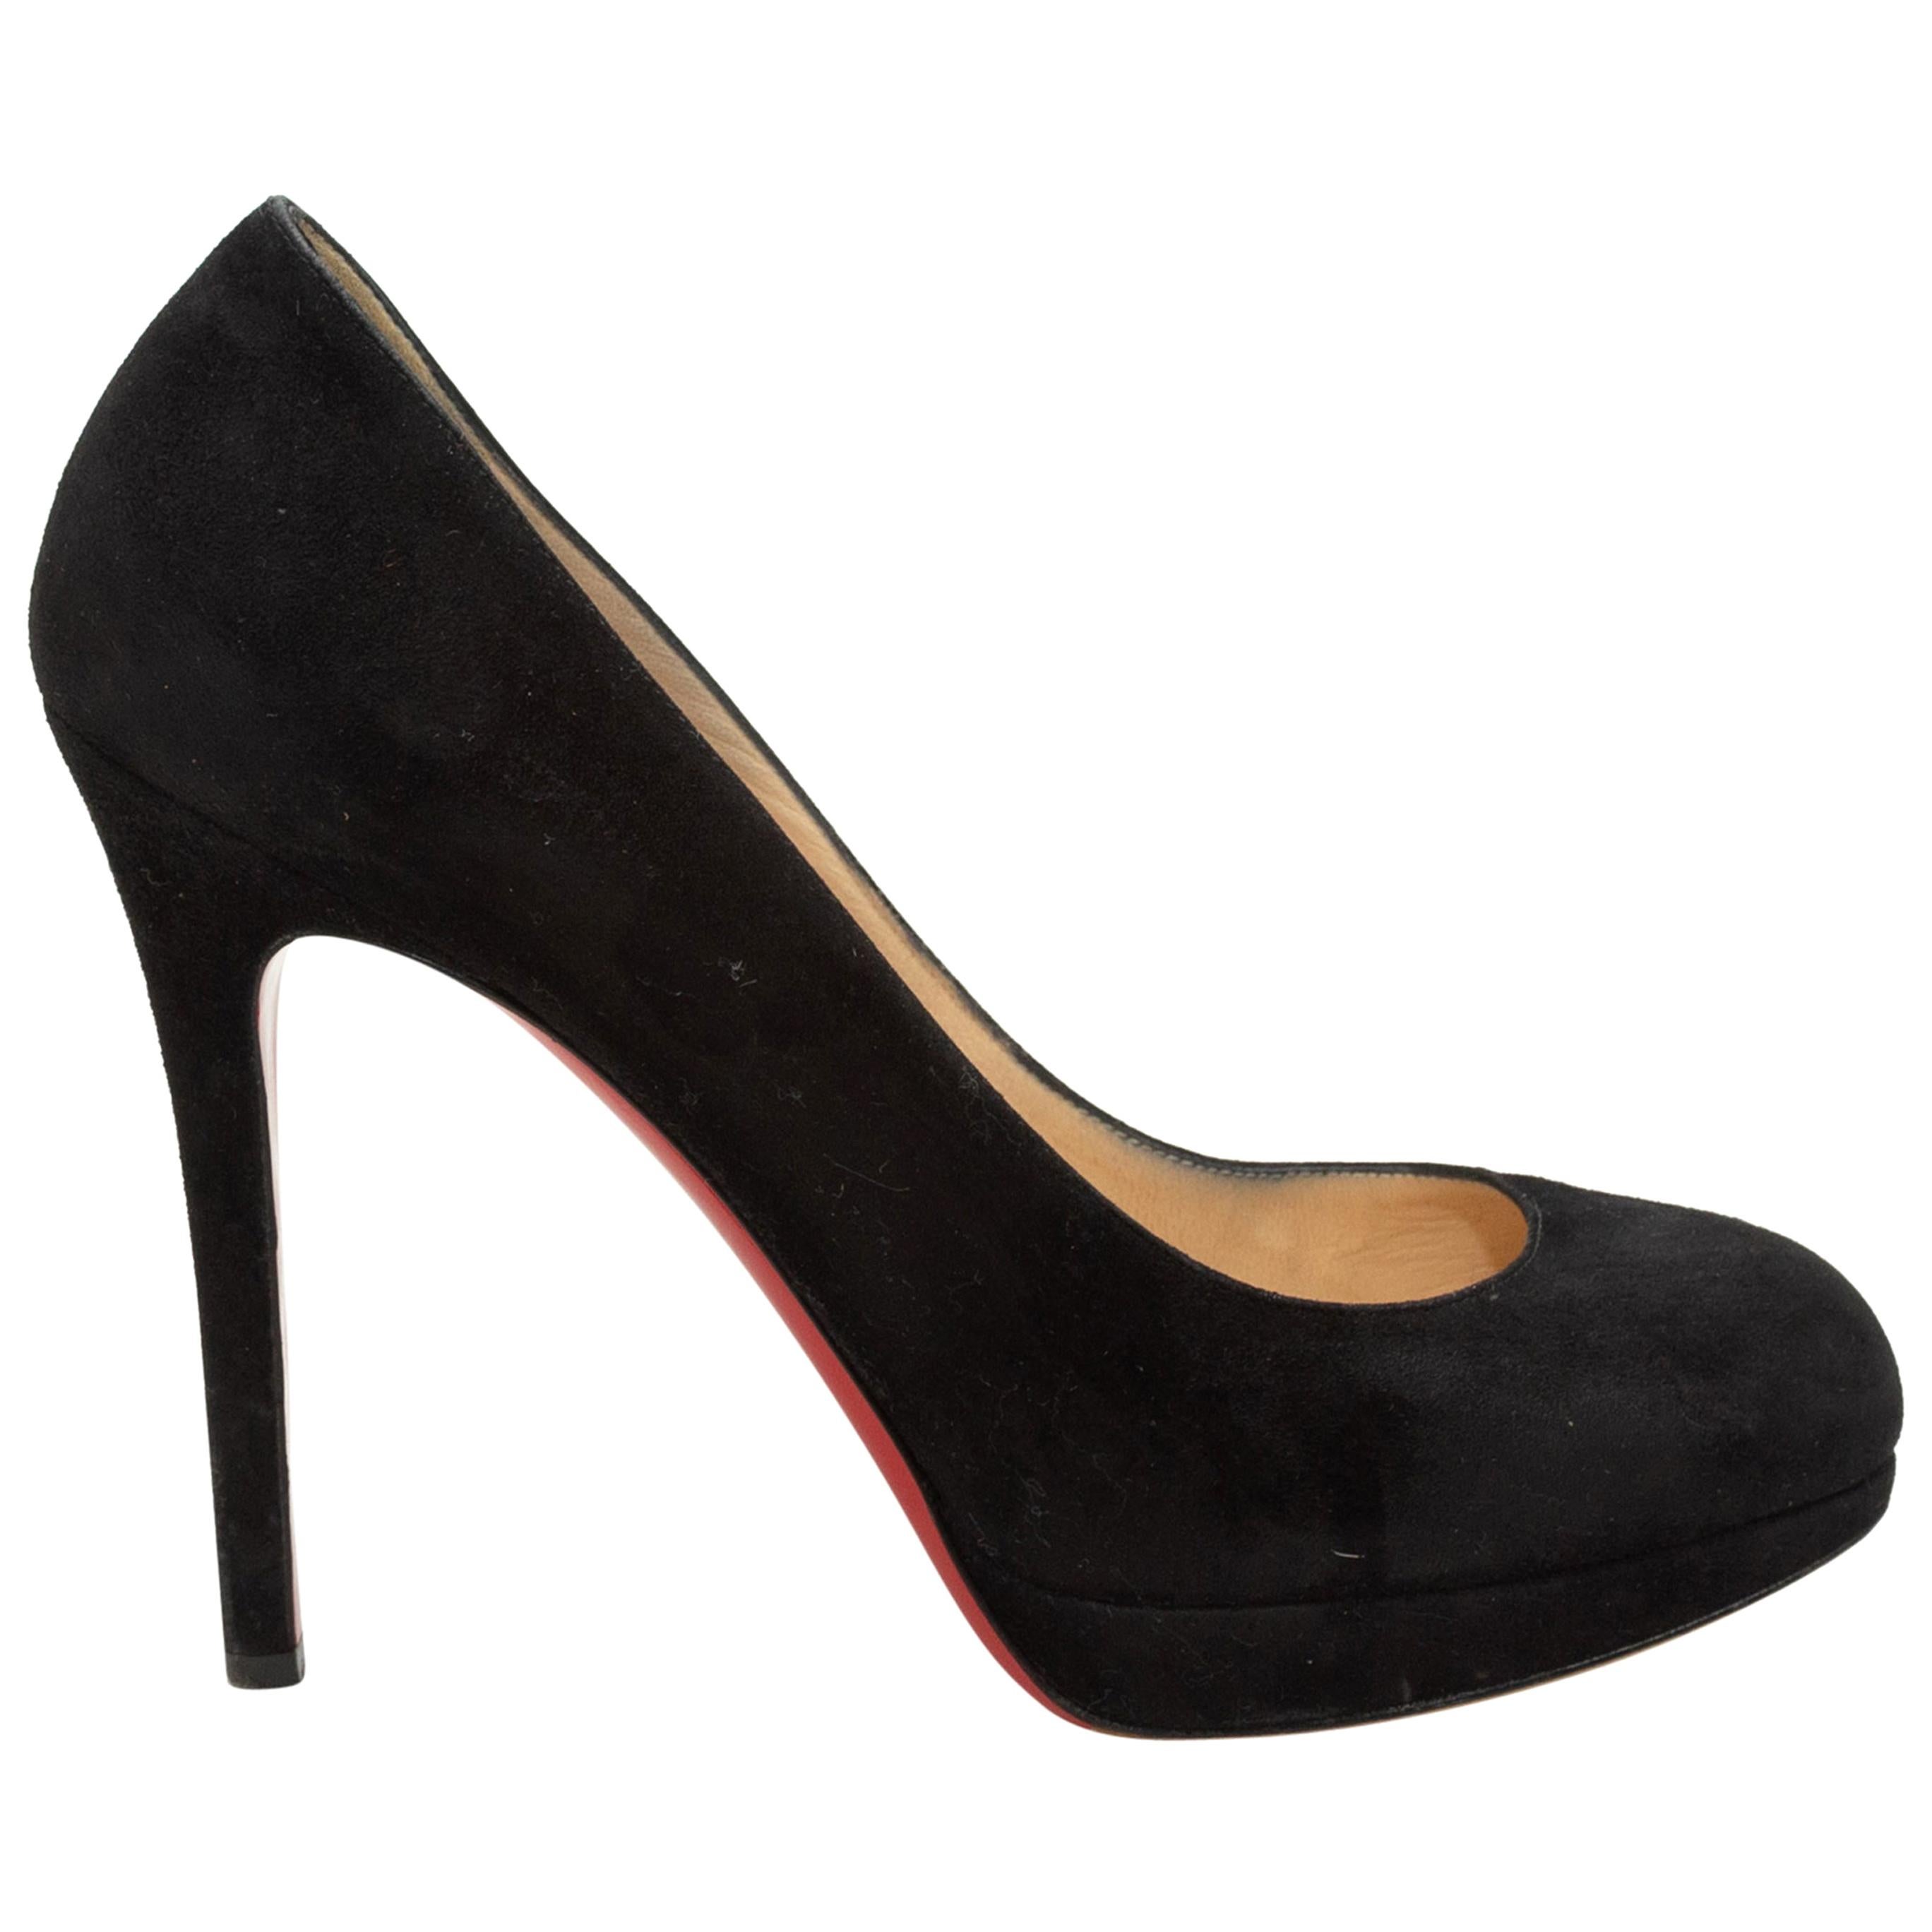 Women's Slip On Super High Heels Platform Round Toe Pumps Black Suede Party  New | eBay